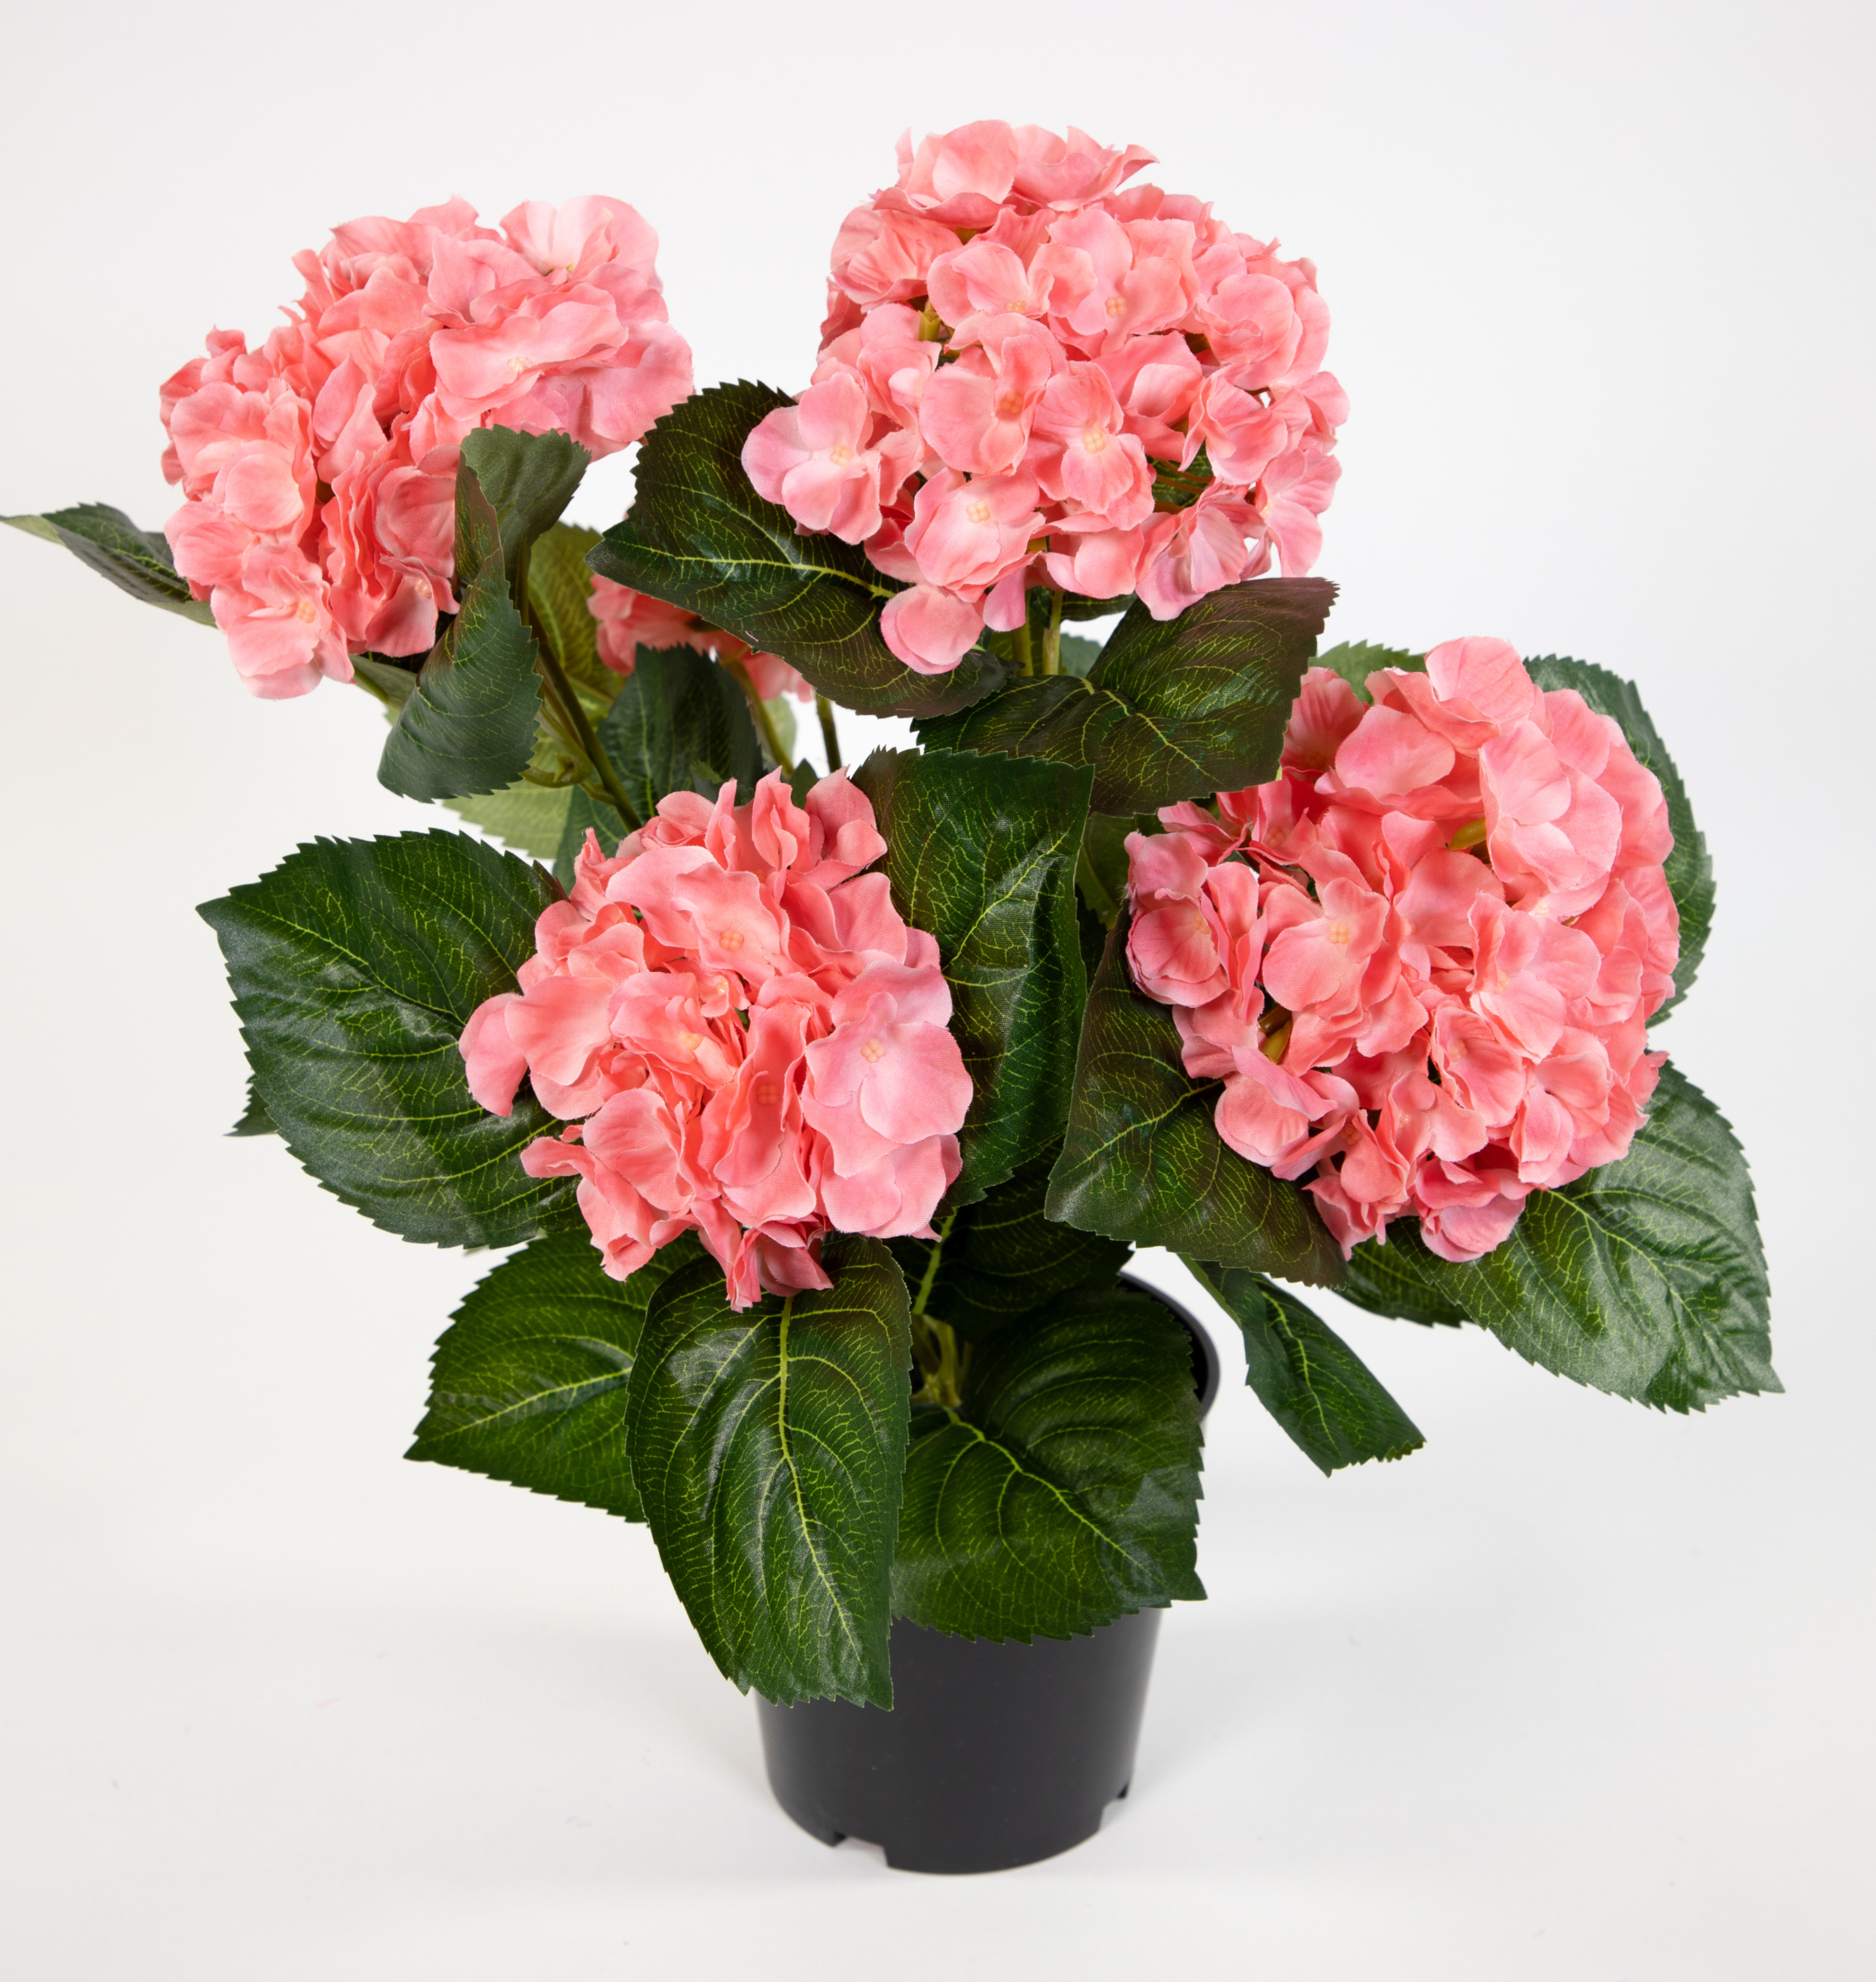 künstliche Blumen Topf im Hortensie Hortensienbusch Pflanzen 42cm Kunstpflanzen rosa-pink Deluxe LM